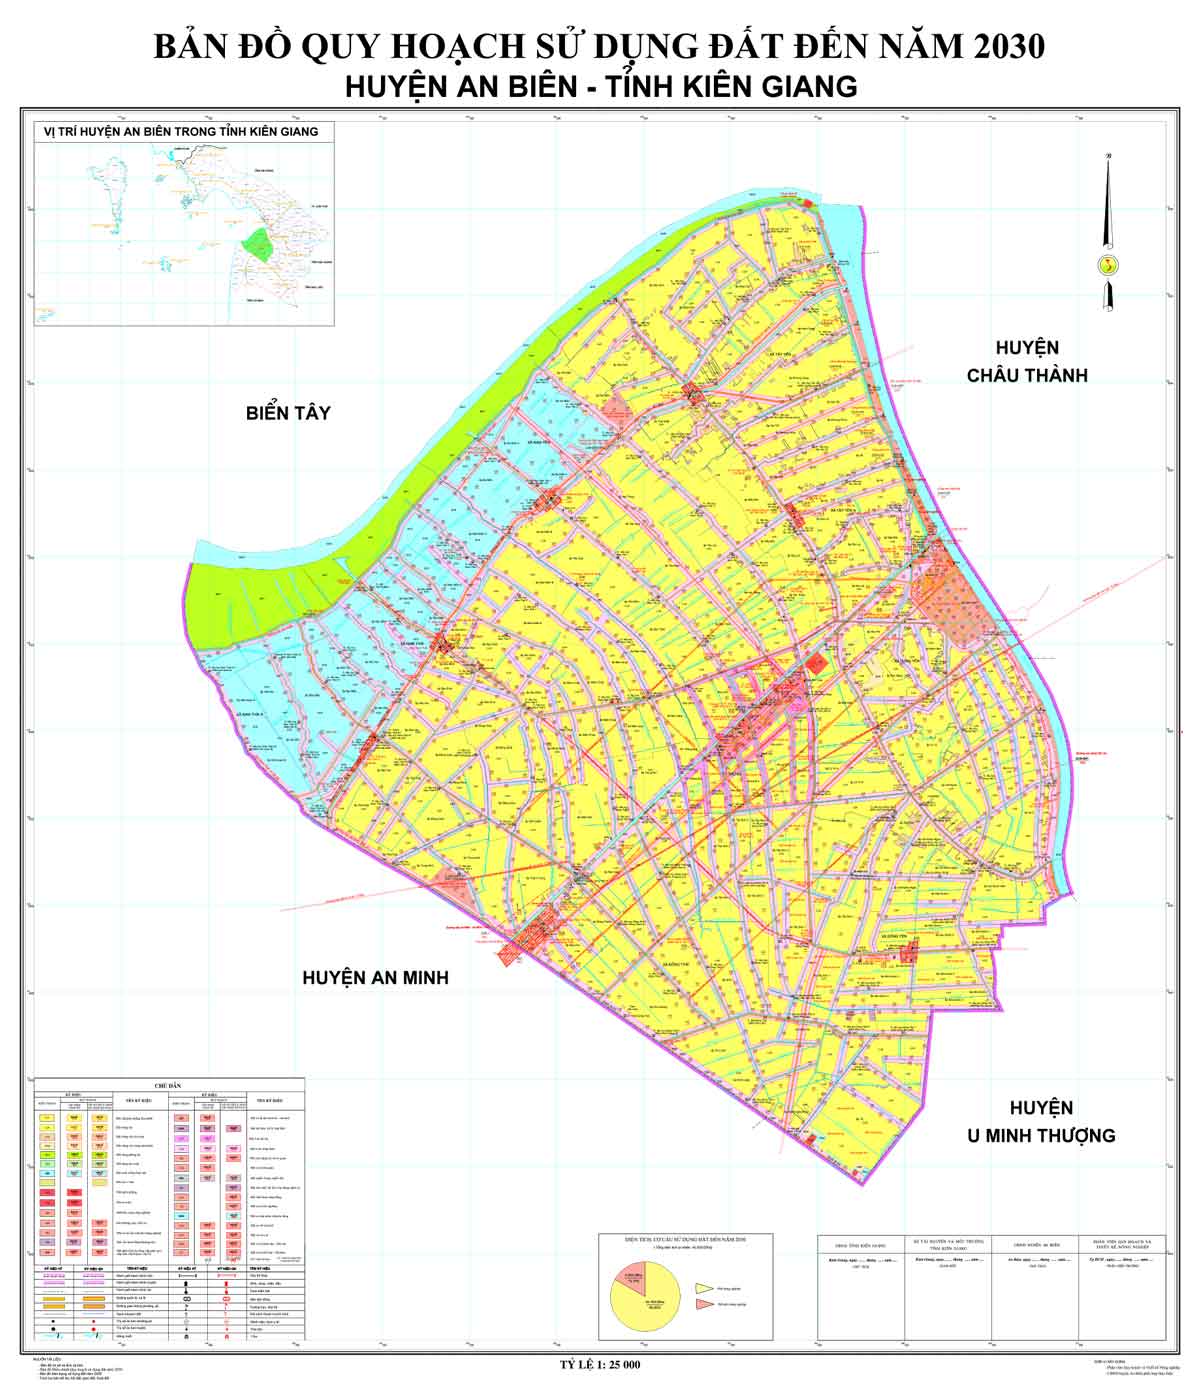 Bản đồ QHSDĐ huyện An Biên đến năm 2030